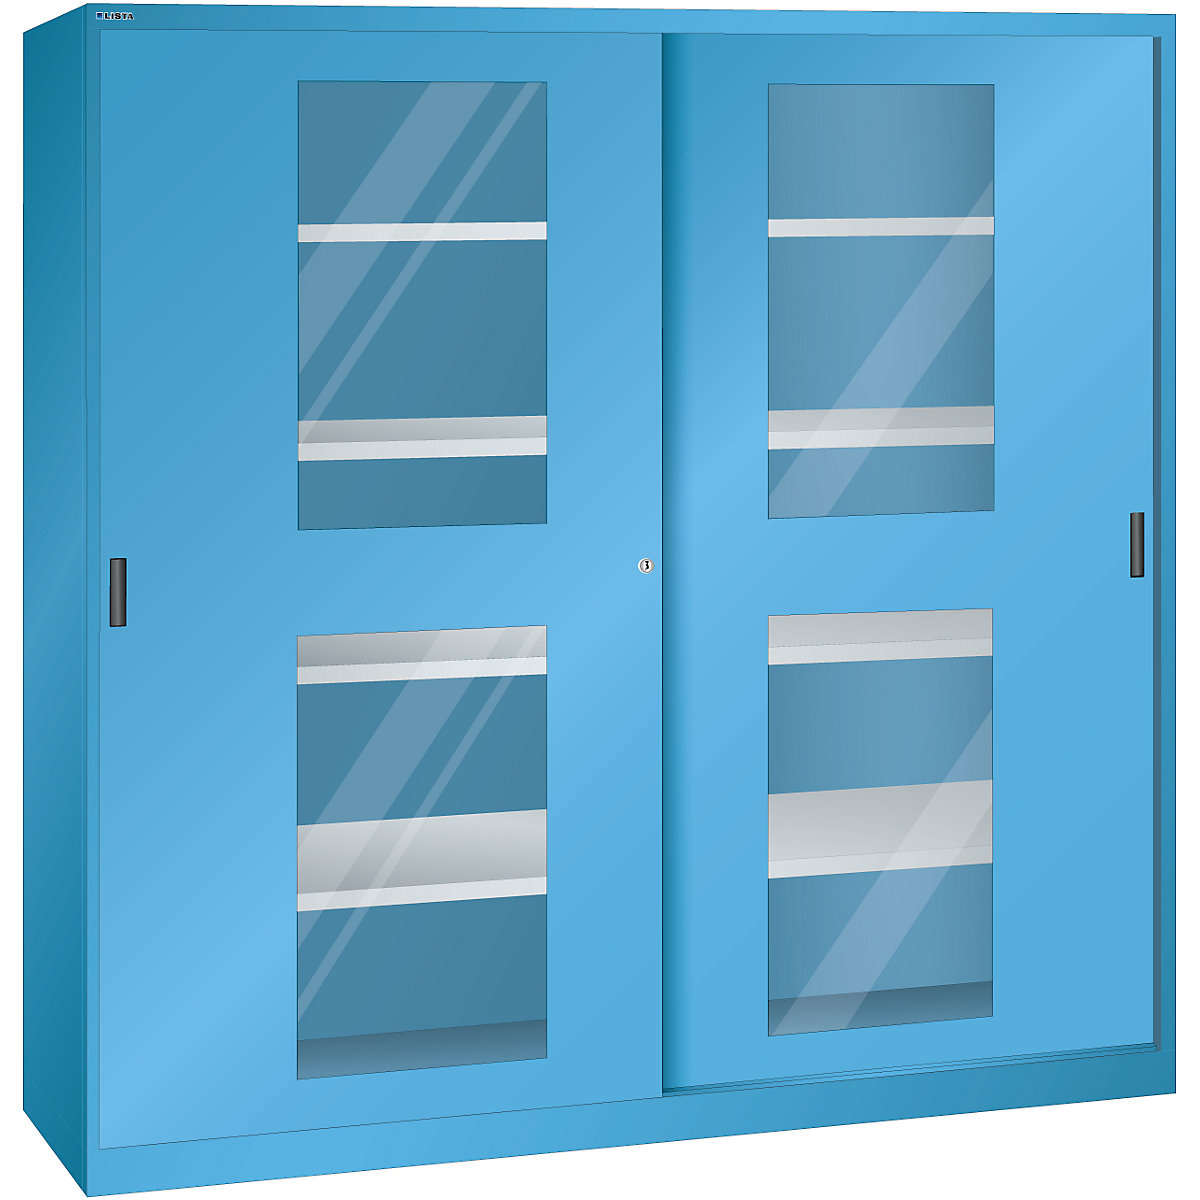 Tolóajtós szekrény ablakos ajtókkal – LISTA, 8 polc, világoskék-8